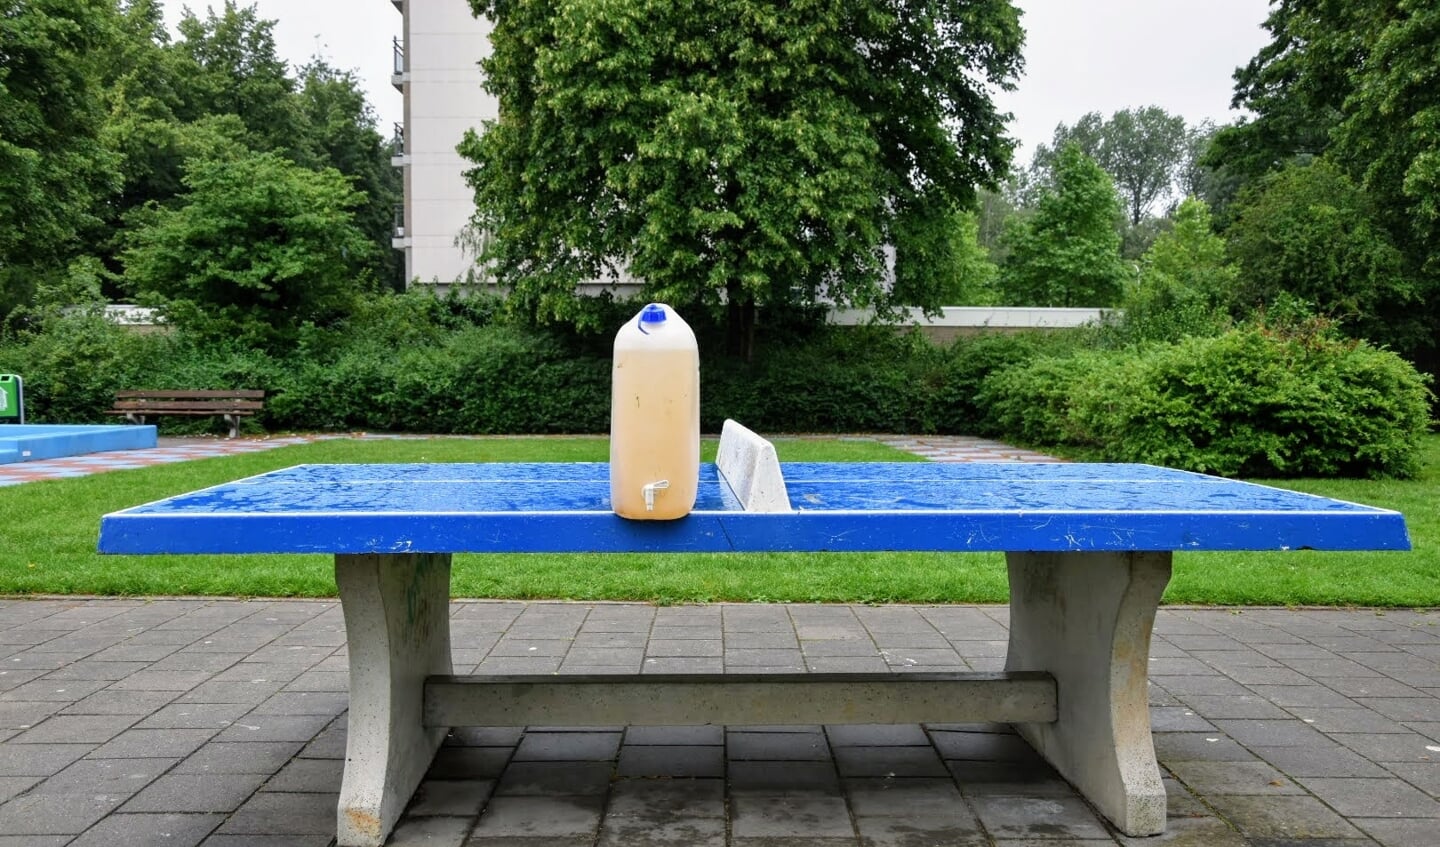 Op de pingpongtafel kan niet gespeeld worden. Het is daarom een prima plek voor de fles met limonade.